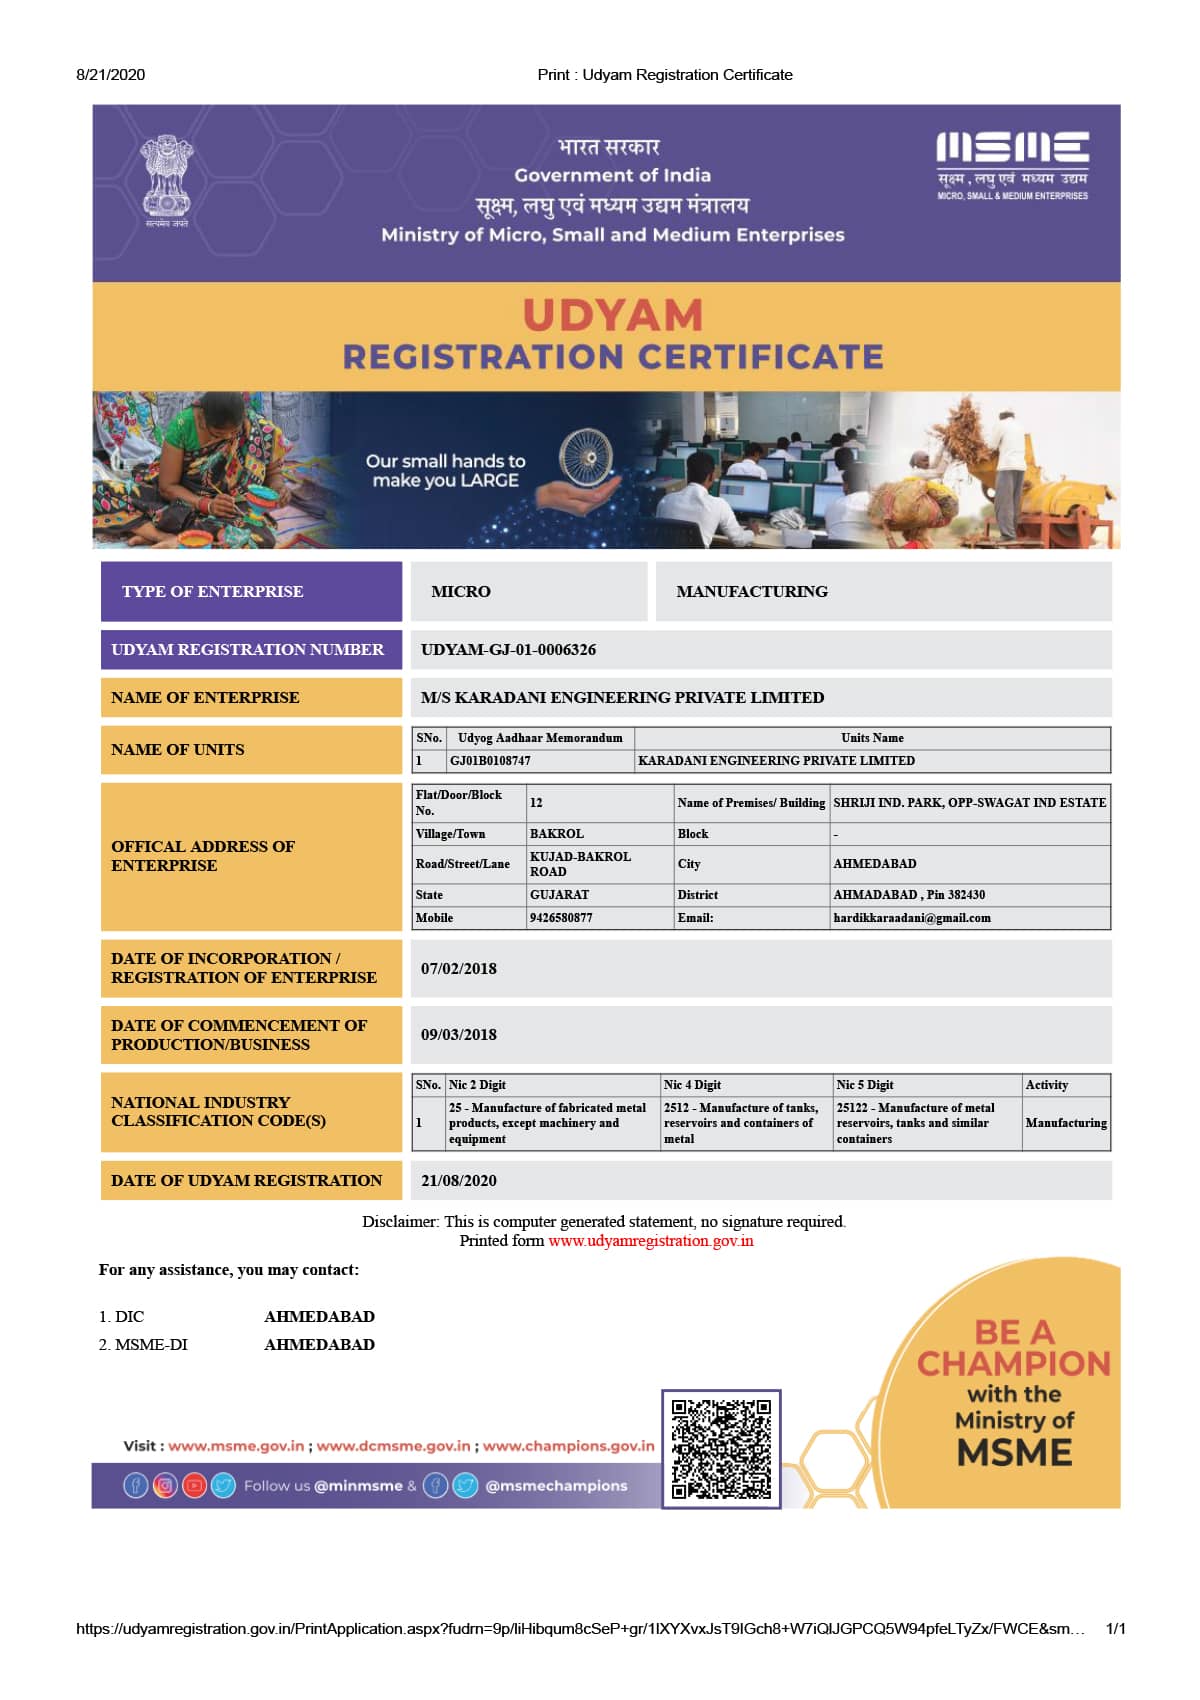 UDYAM Registration Certifcate